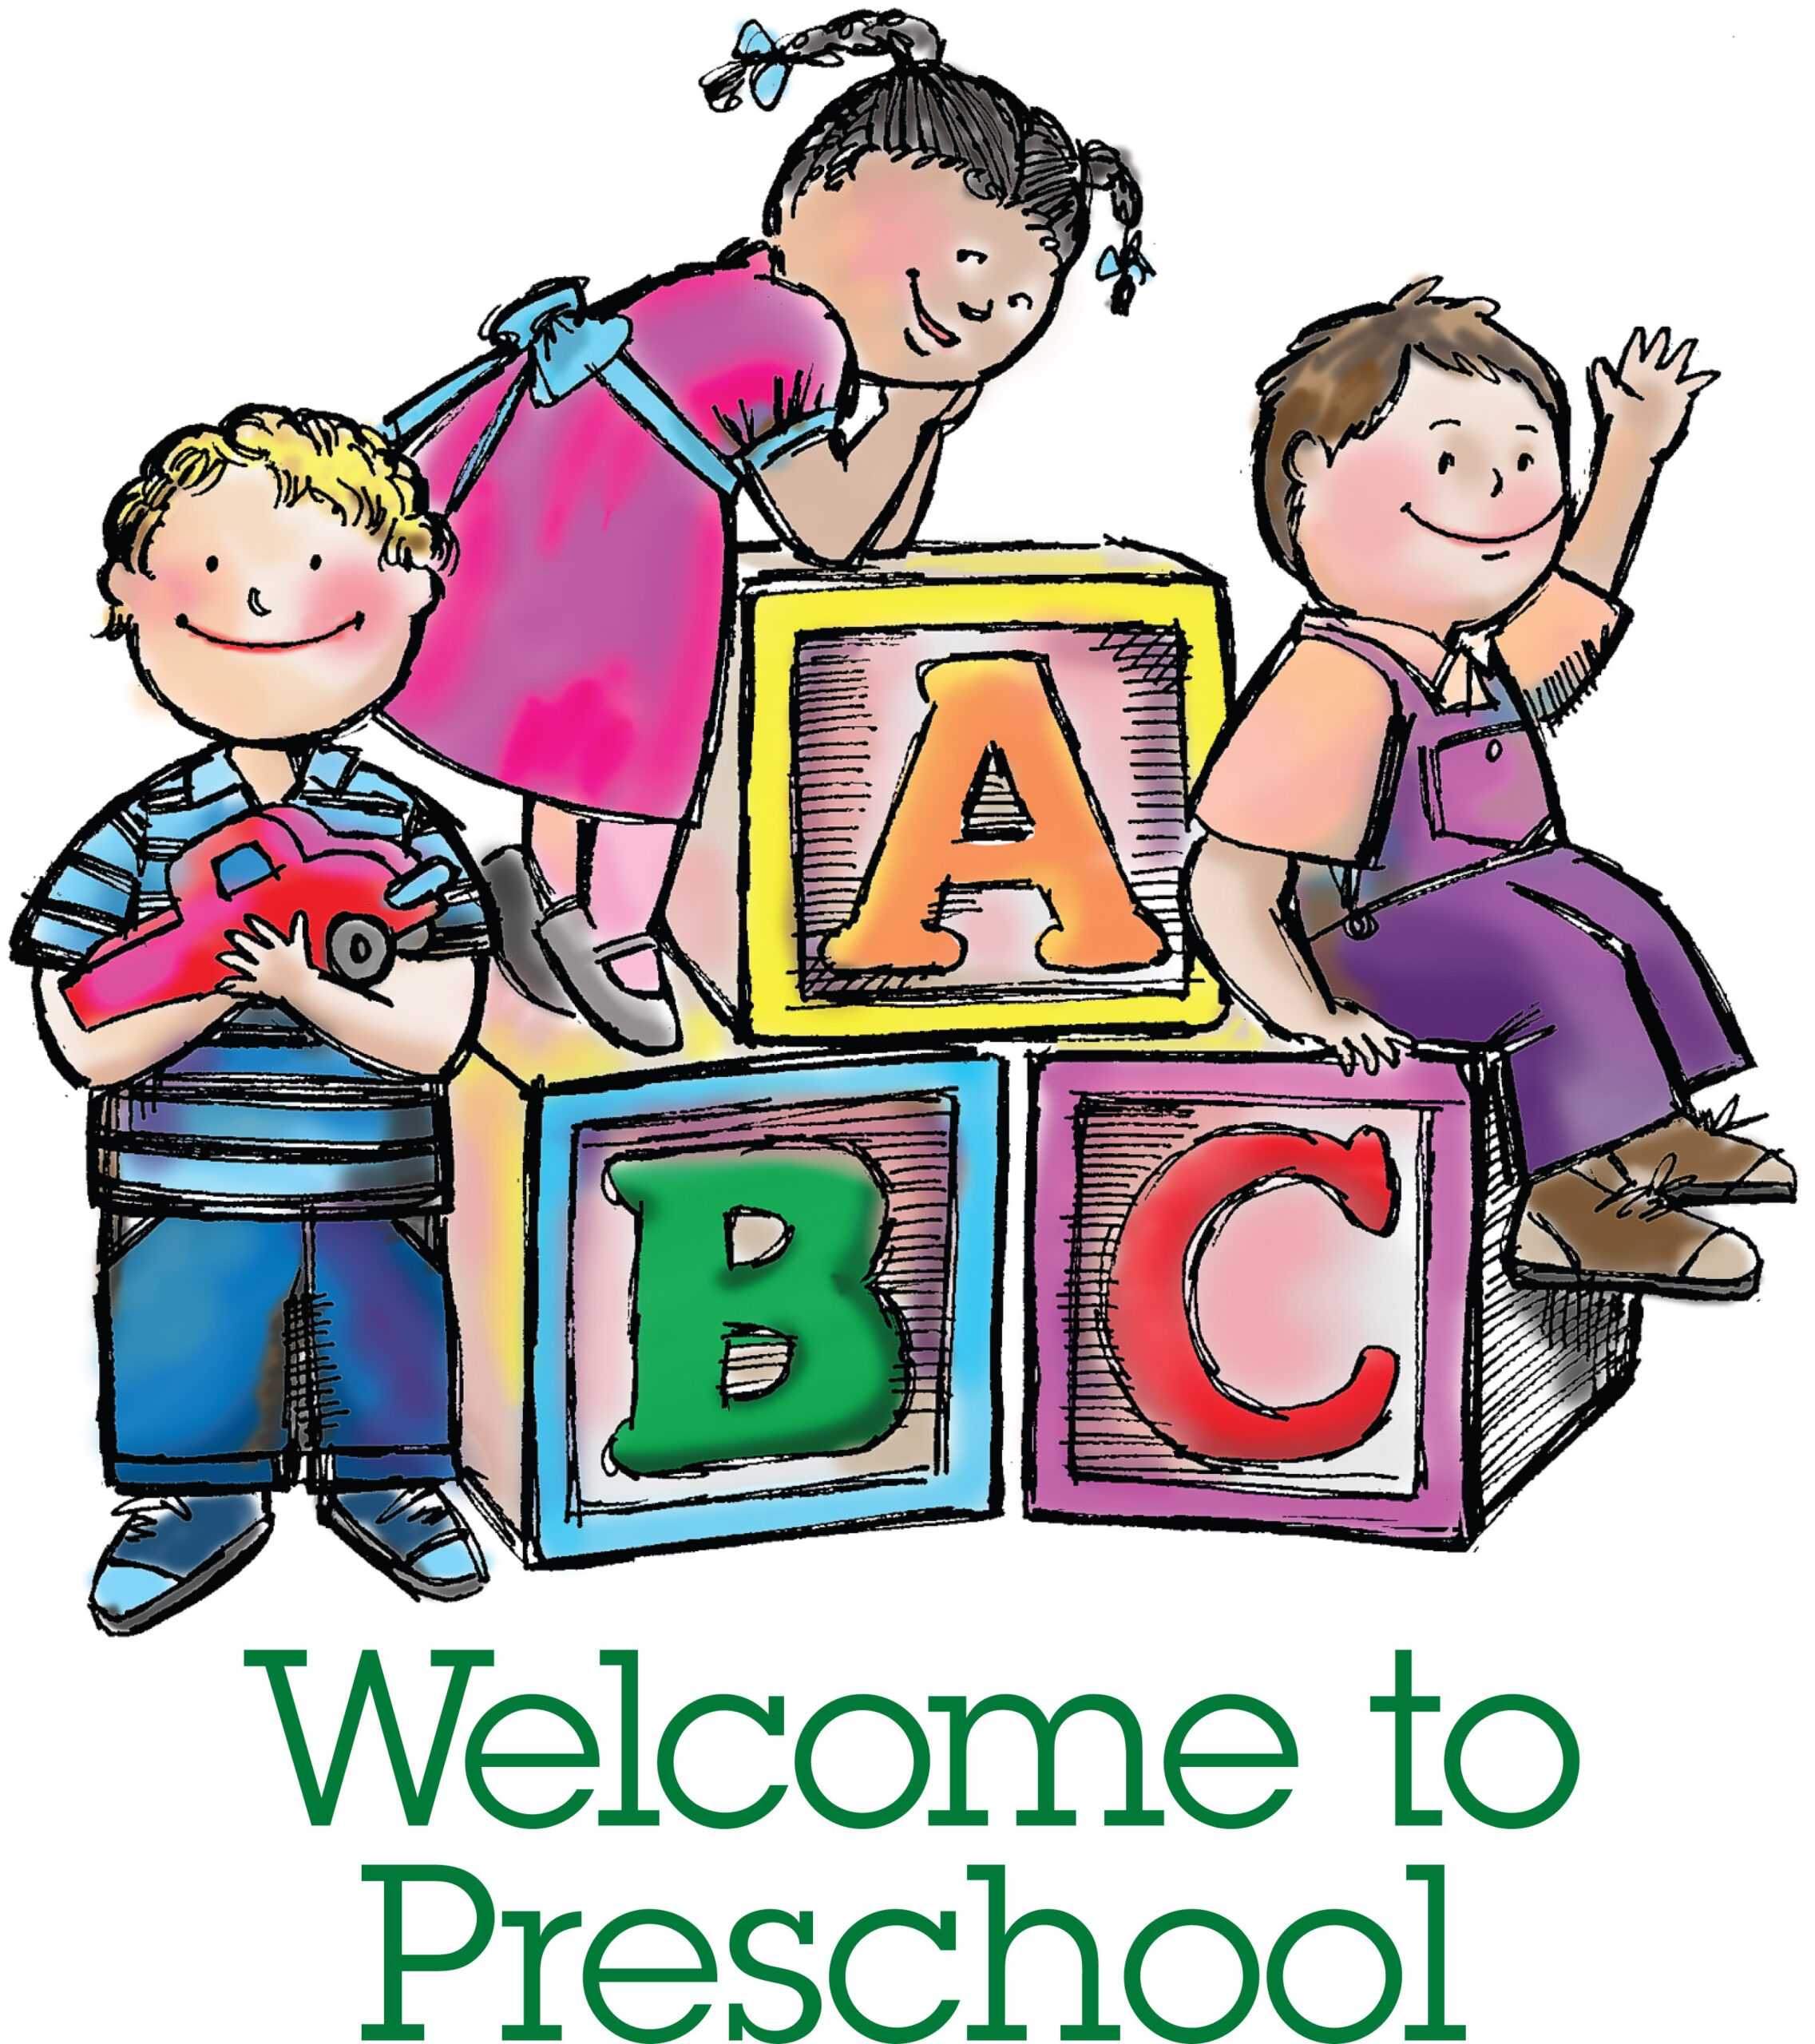 Play School Brochure Templates Unique Free Nursery School Throughout Play School Brochure Templates